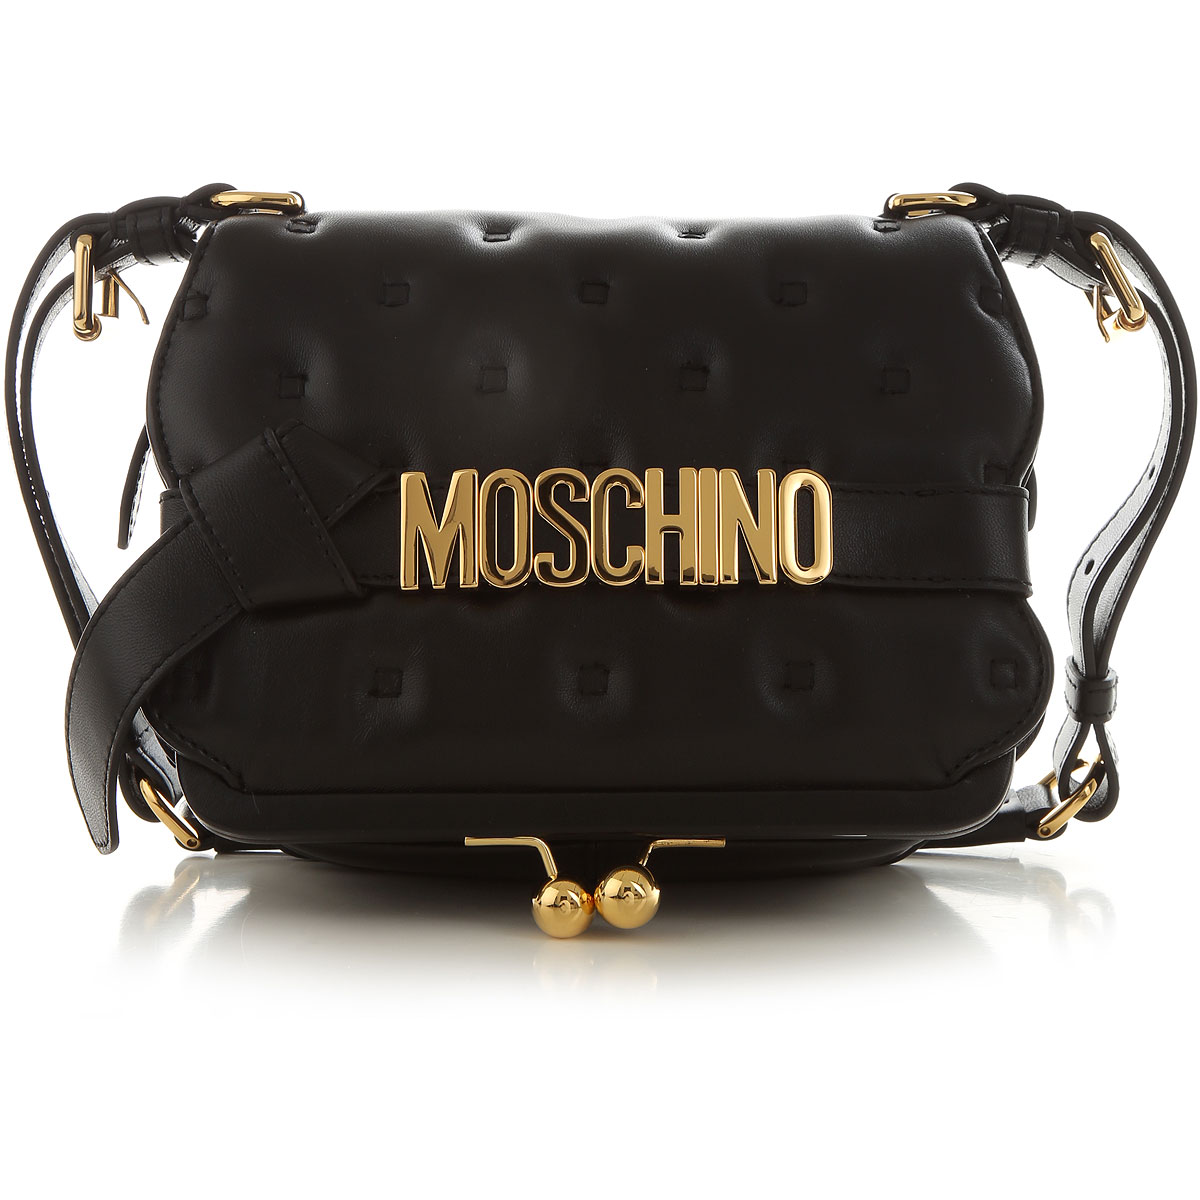 Handbags Moschino, Style code: 7530-8002-4555